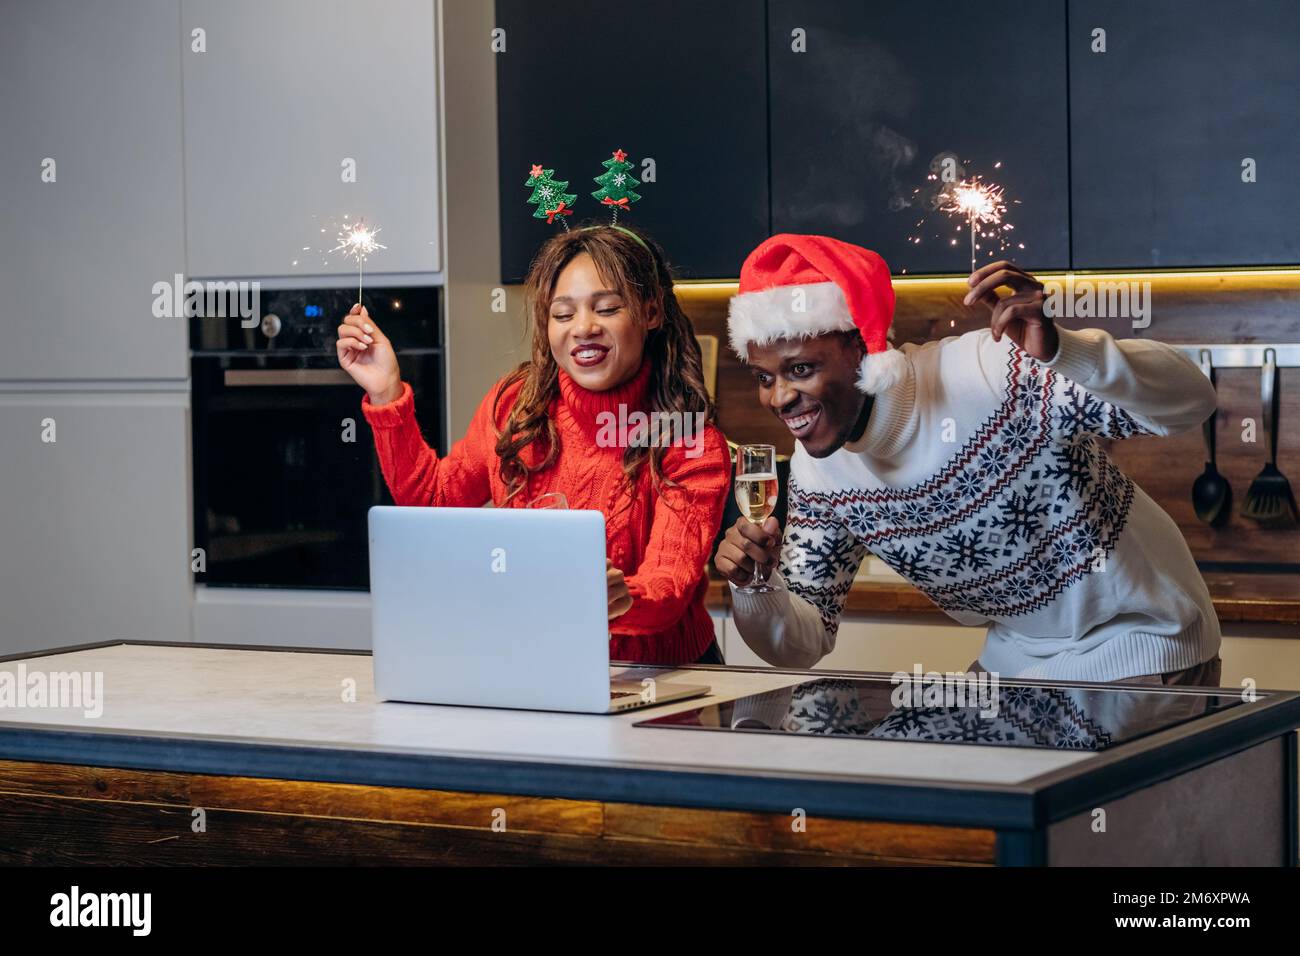 Un jeune couple heureux regarde des spectacles festifs avec un ordinateur portable et célèbre Noël en tenant des spamoirs et en buvant du champagne dans la cuisine Banque D'Images